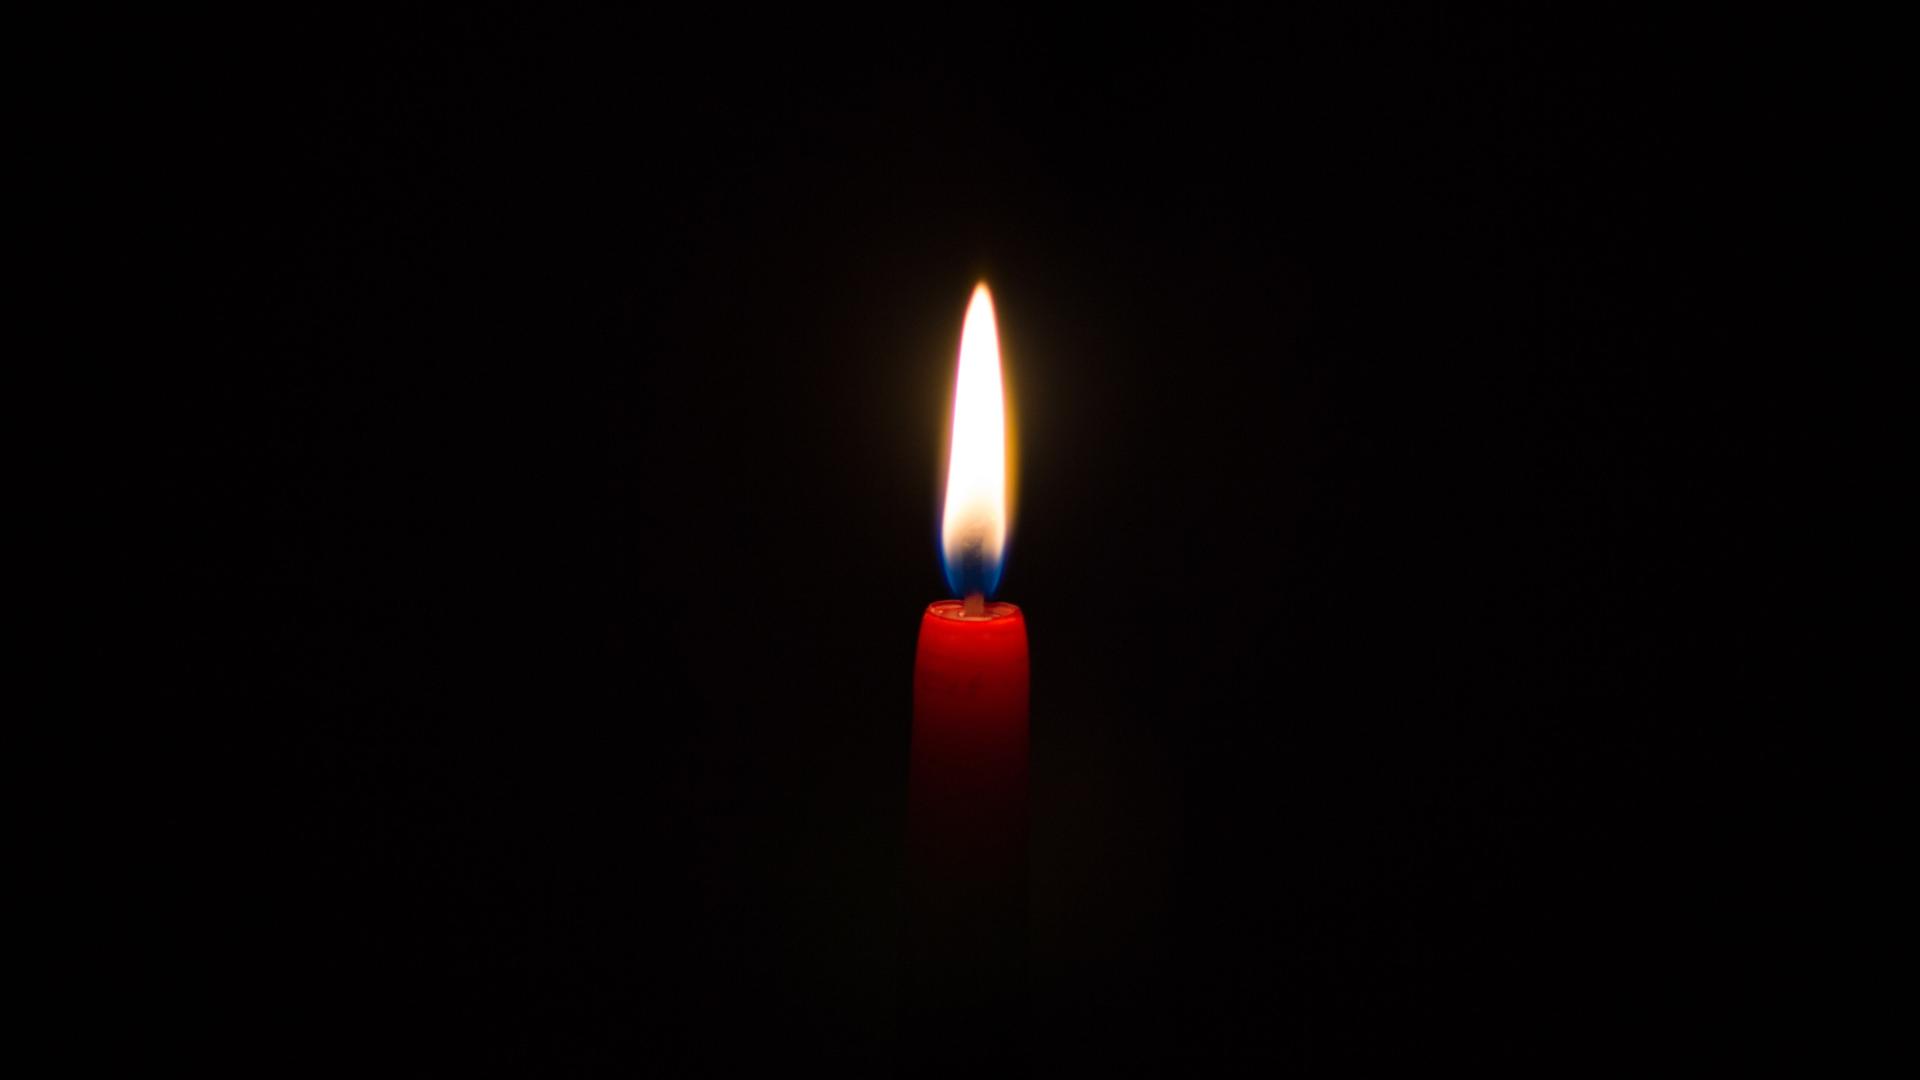 Vor einem schwarzen Hintergrund leuchtet eine Kerzenflamme. Die Kerze ist schmal und rot.